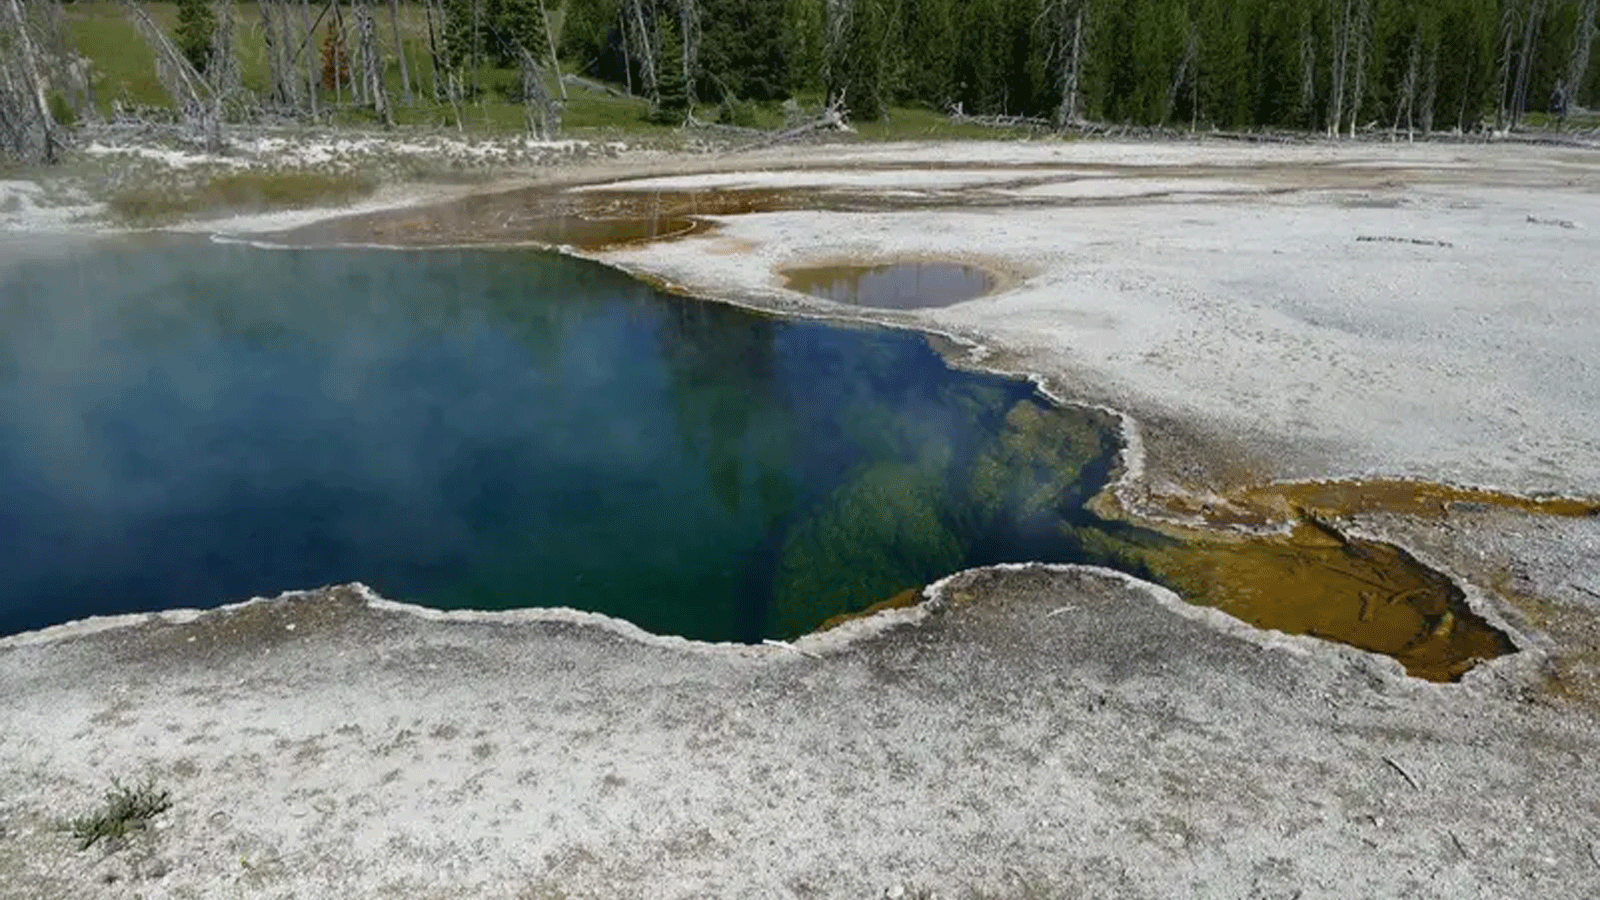 حوض Abyss في حديقة يلوستون الوطنية حيث تم العثور على قدم بشرية(تويتر)